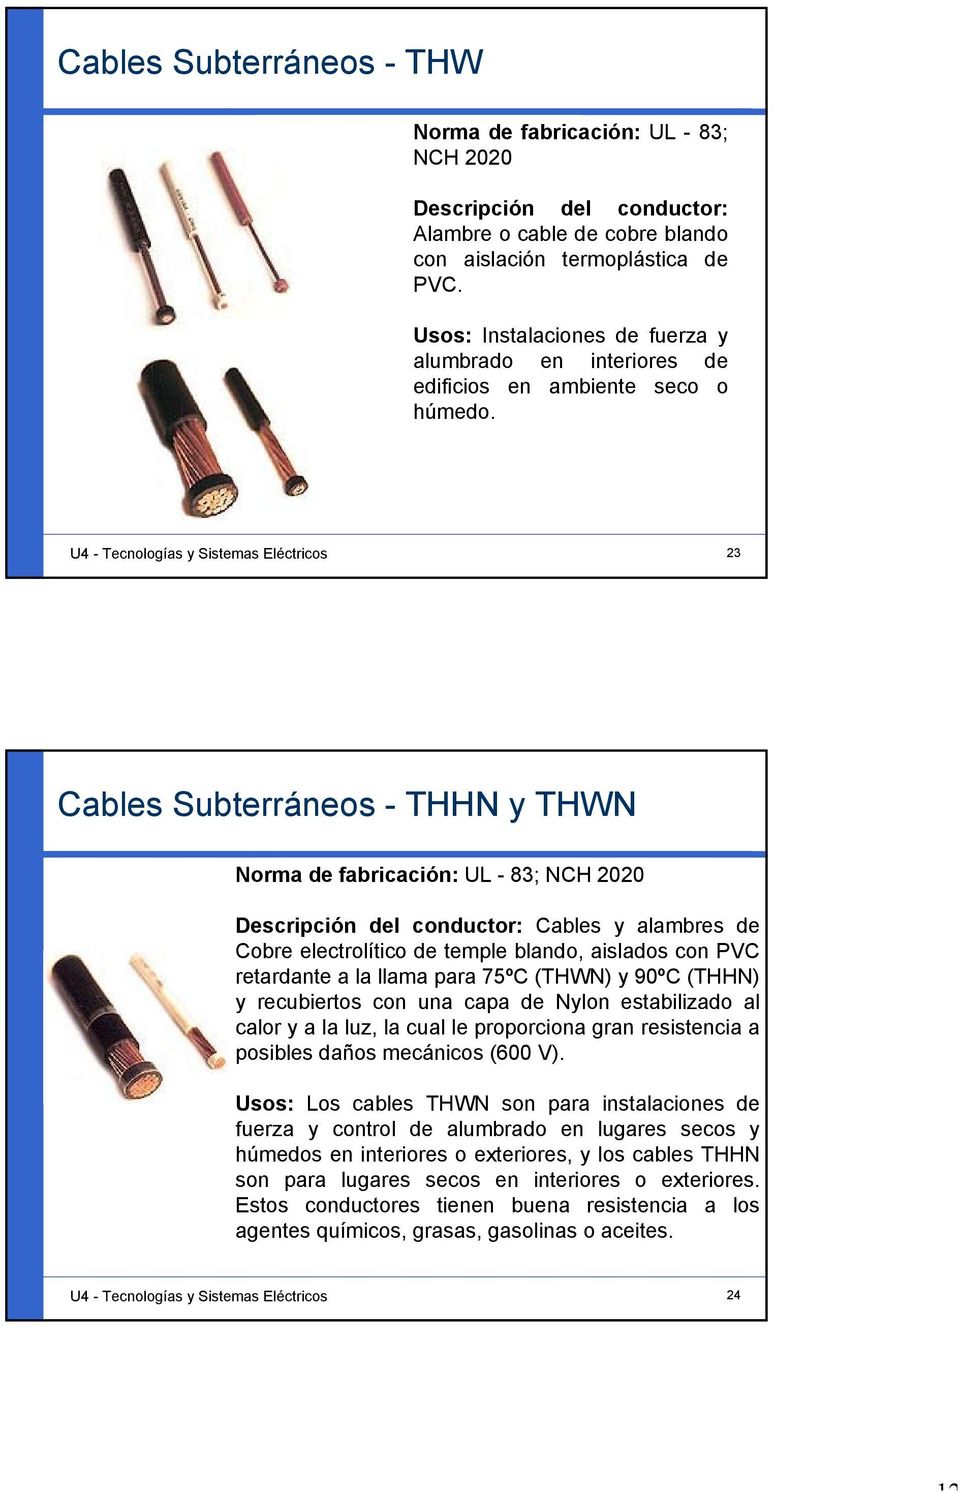 U4 - Tecnologías y Sistemas Eléctricos 23 Cables Subterráneos - THHN y THWN Norma de fabricación: UL - 83; NCH 2020 Descripción del conductor: Cables y alambres de Cobre electrolítico de temple